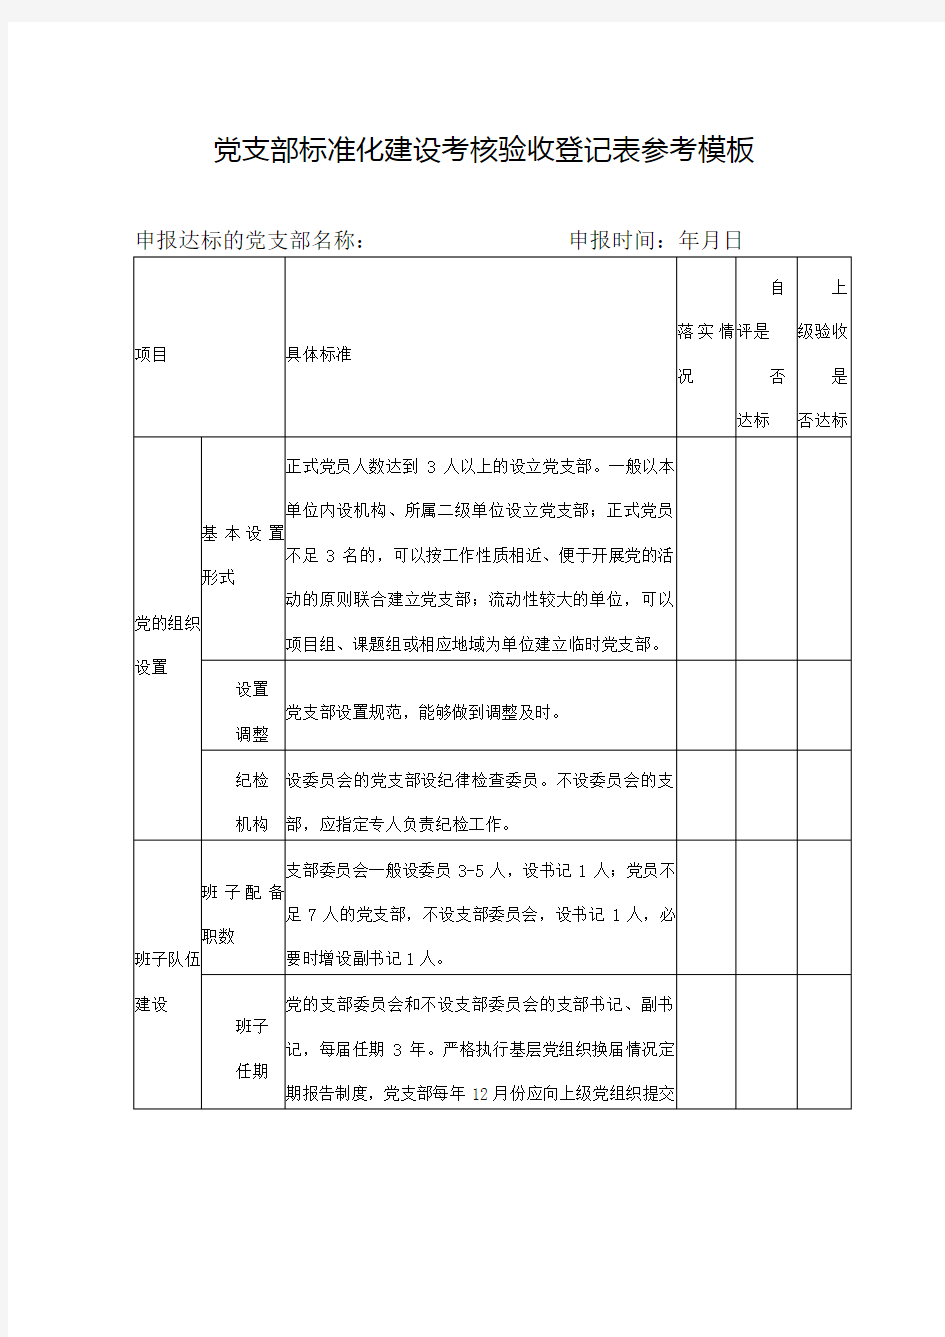 党支部标准化建设考核验收登记表参考模板